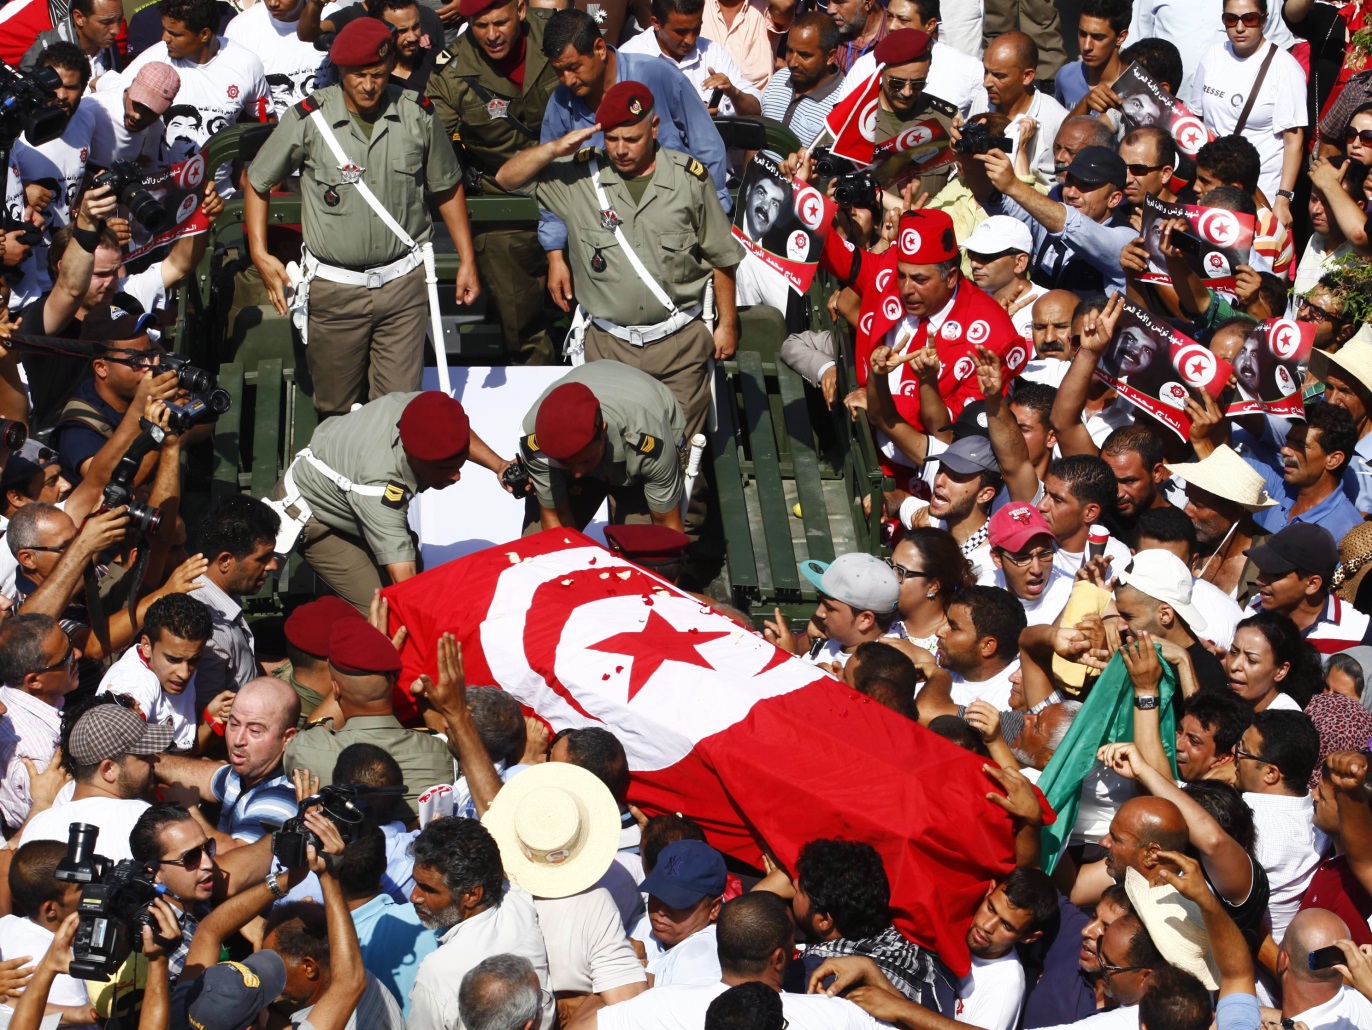 جثمان المعارض محمر البراهمي بعد استهدافه من أنصار الشريعة، يوليو 2013 (رويترز)